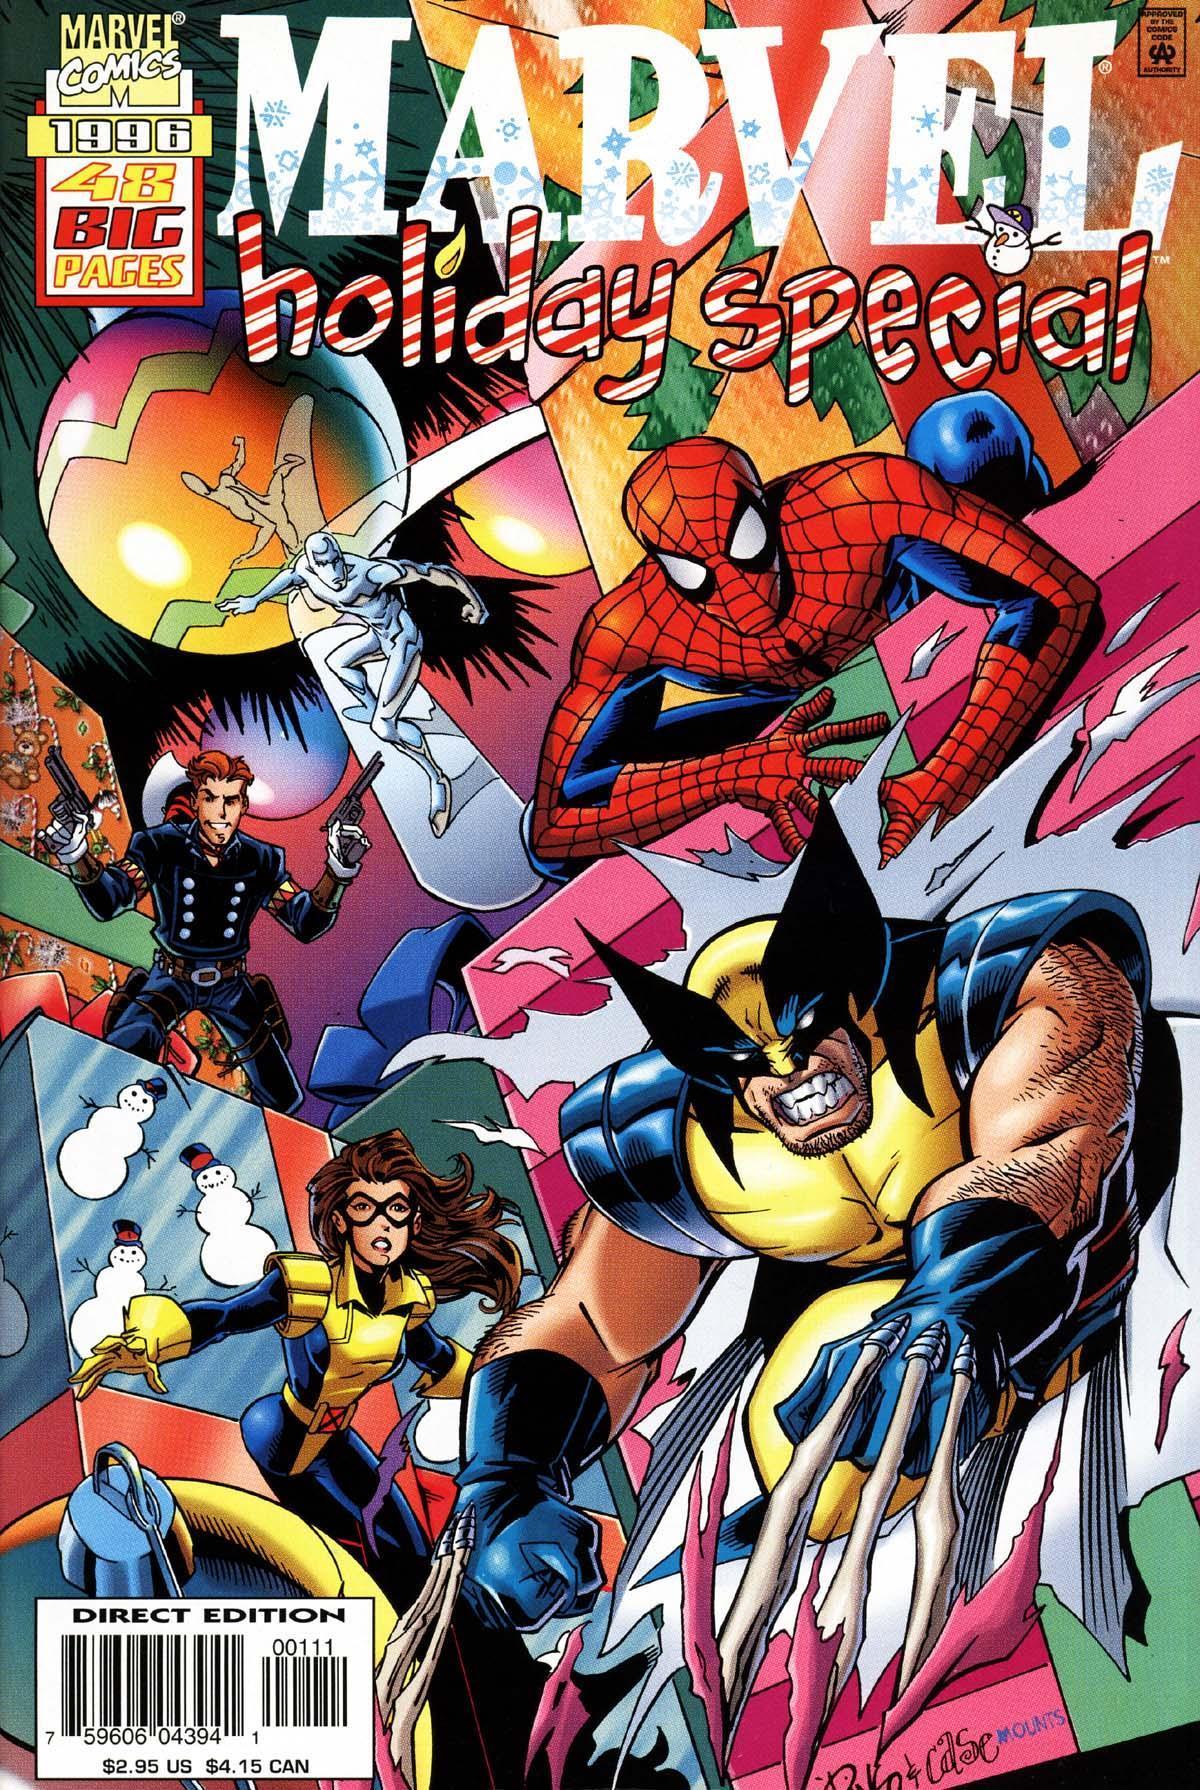 Marvel Holiday Special Vol. 1 #1996